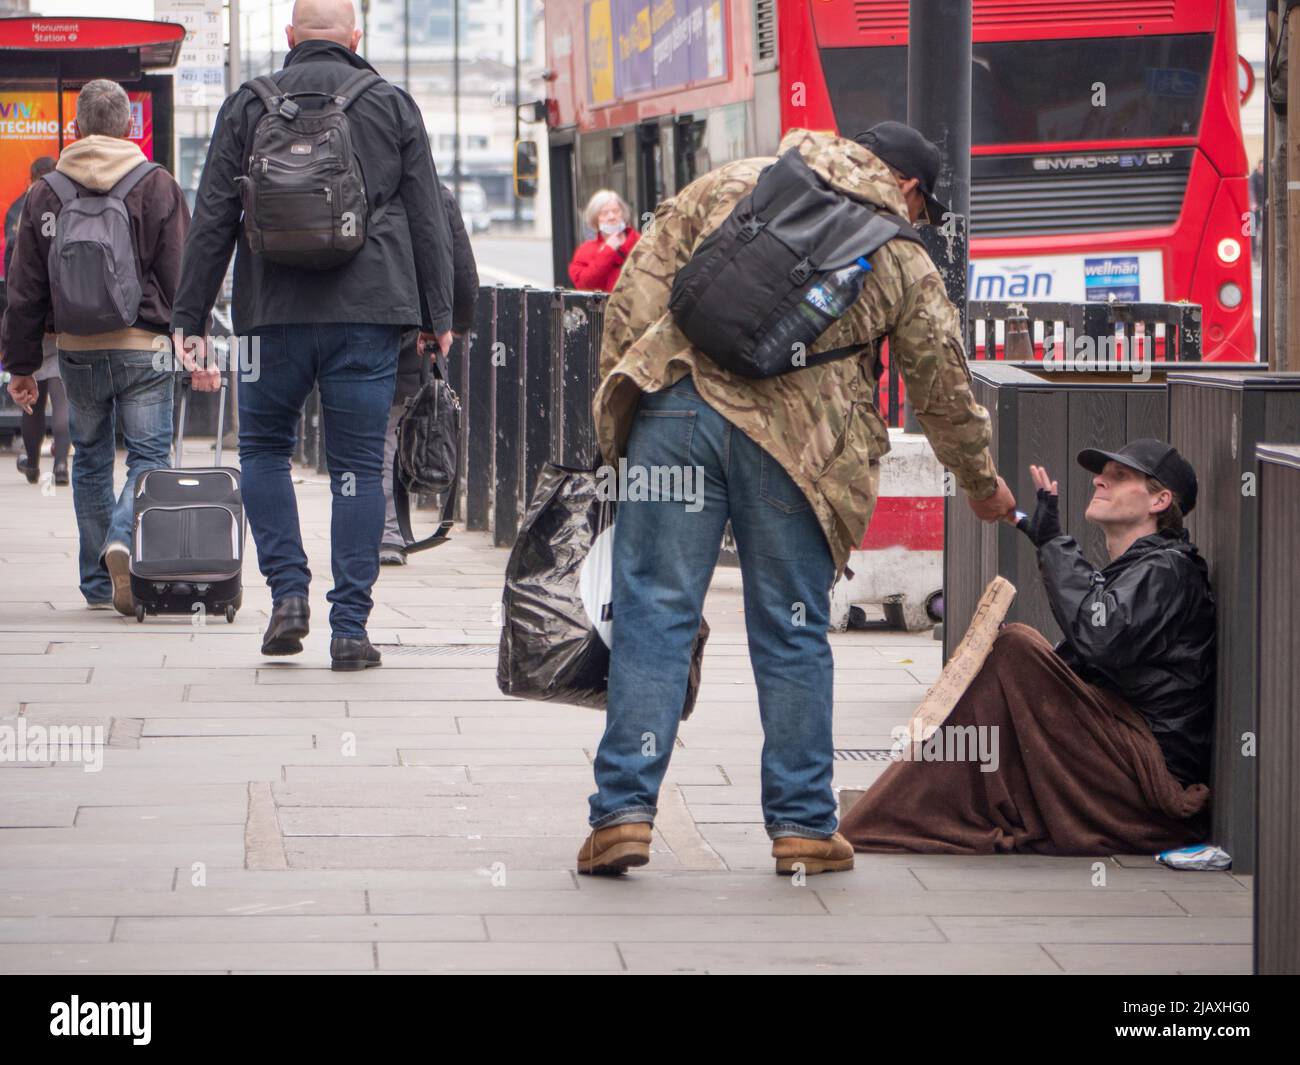 La pobreza en Londres, miembro del público que se inclina para dar alimentos a un mendigo en el Puente de Londres con manta y signo Foto de stock